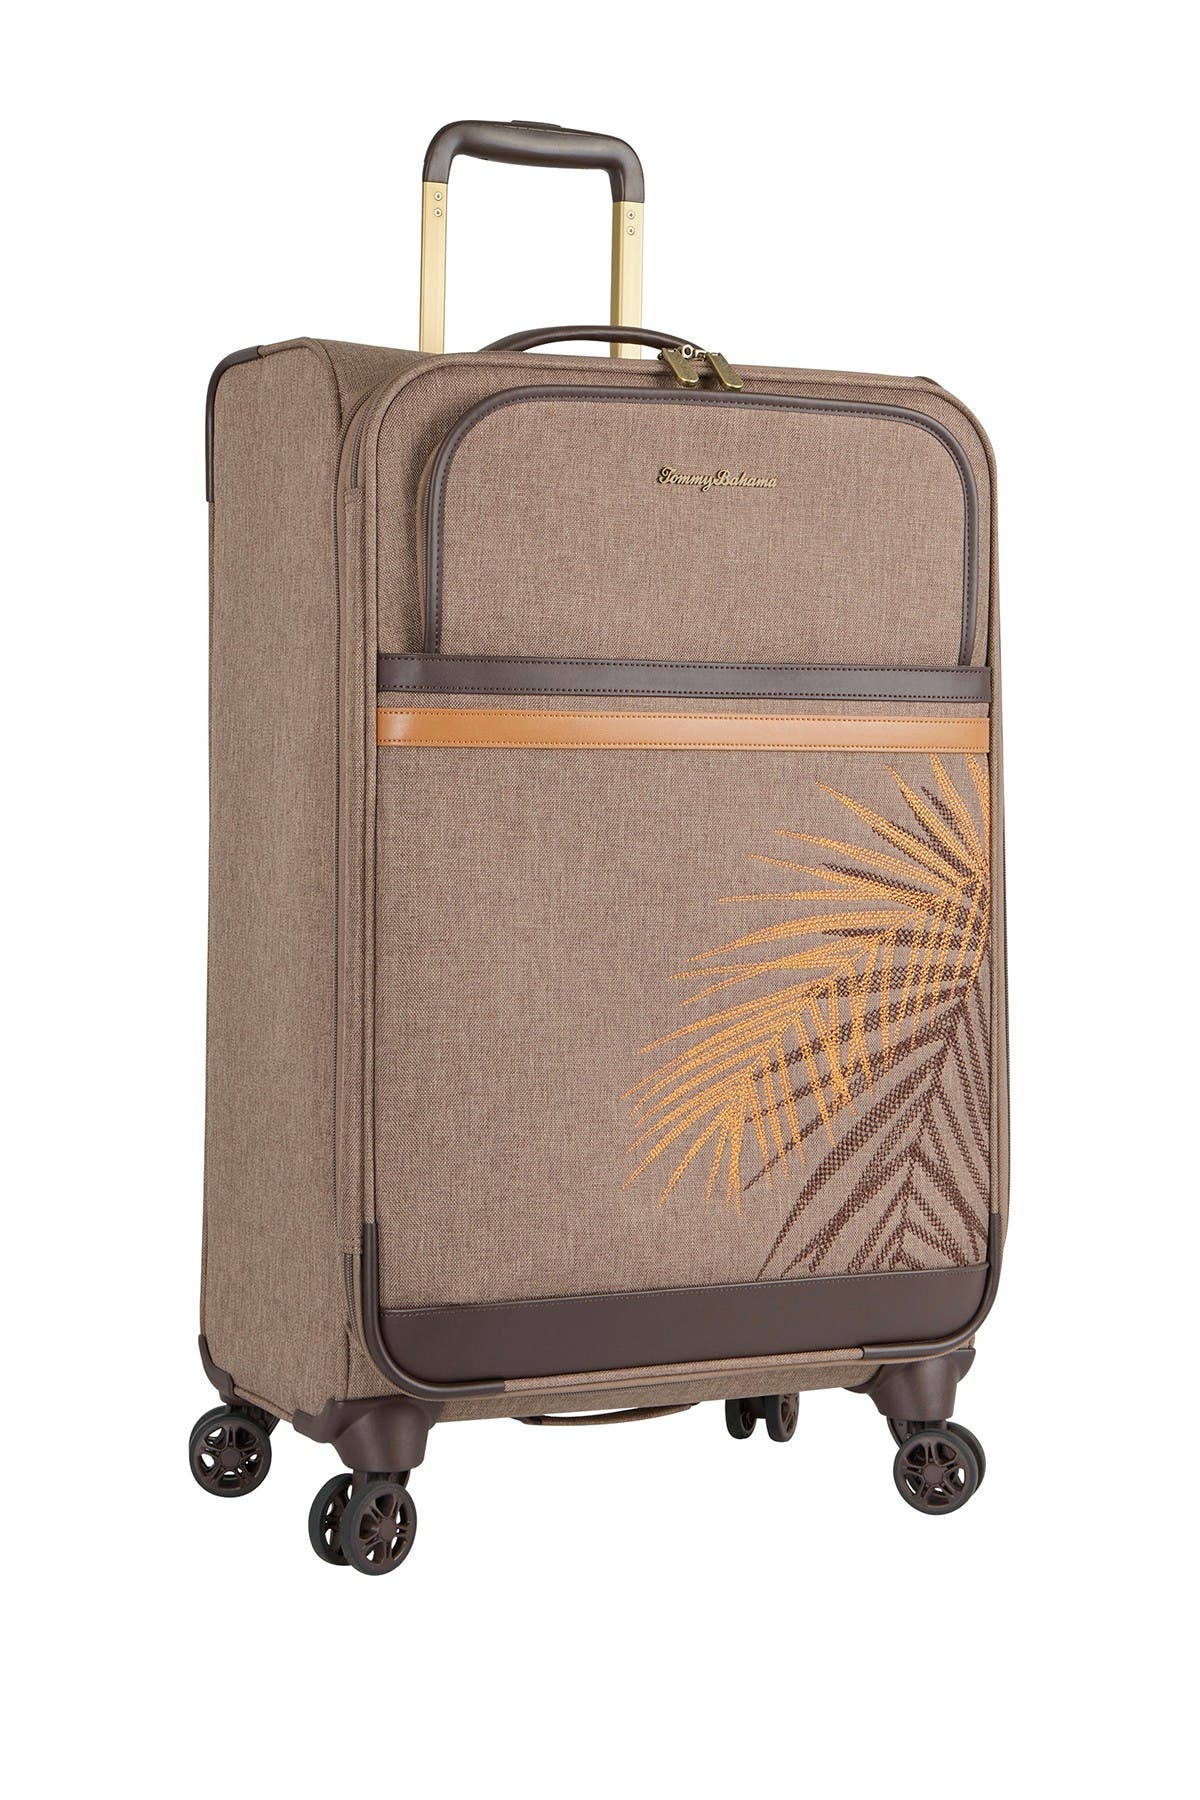 tommy bahama chesapeake bay luggage